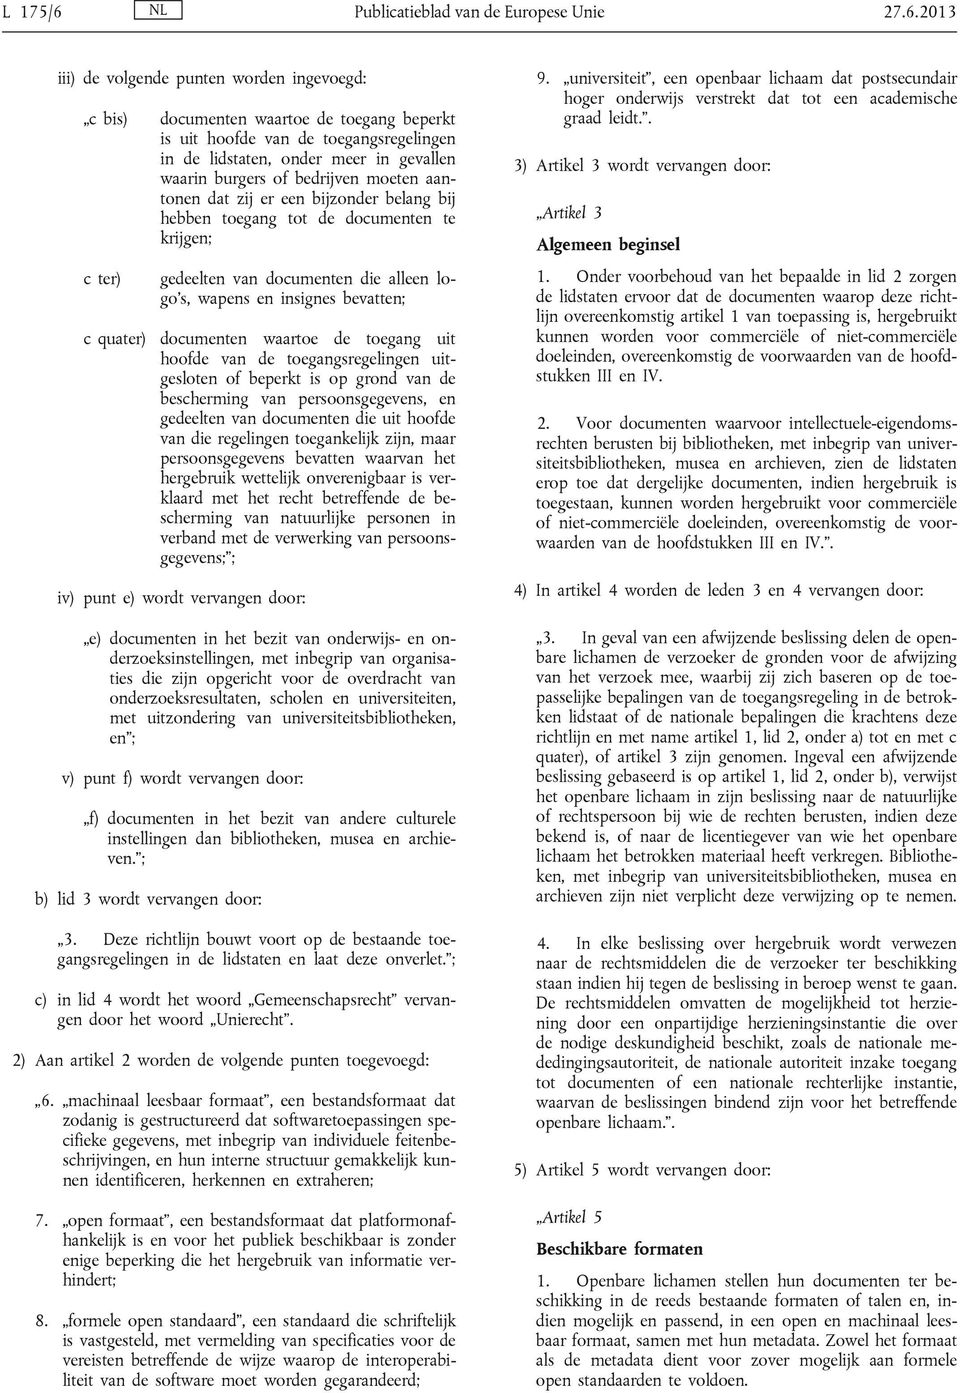 2013 iii) de volgende punten worden ingevoegd: c bis) documenten waartoe de toegang beperkt is uit hoofde van de toegangsregelingen in de lidstaten, onder meer in gevallen waarin burgers of bedrijven